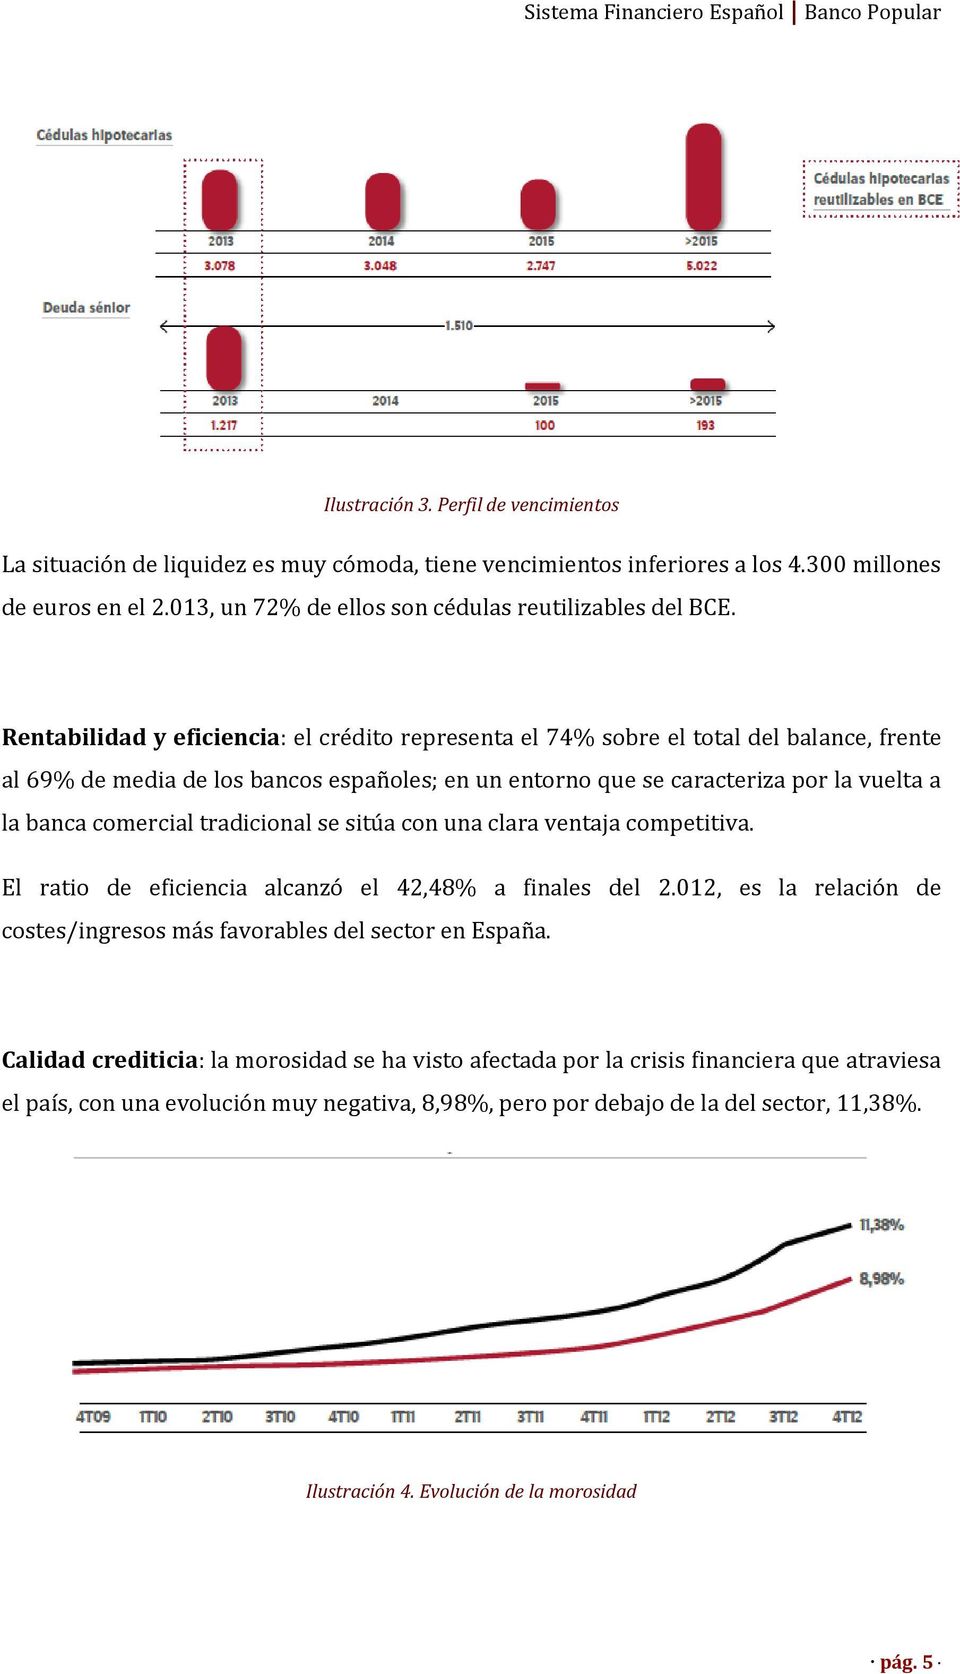 Rentabilidad y eficiencia: el crédito representa el 74% sobre el total del balance, frente al 69% de media de los bancos españoles; en un entorno que se caracteriza por la vuelta a la banca comercial